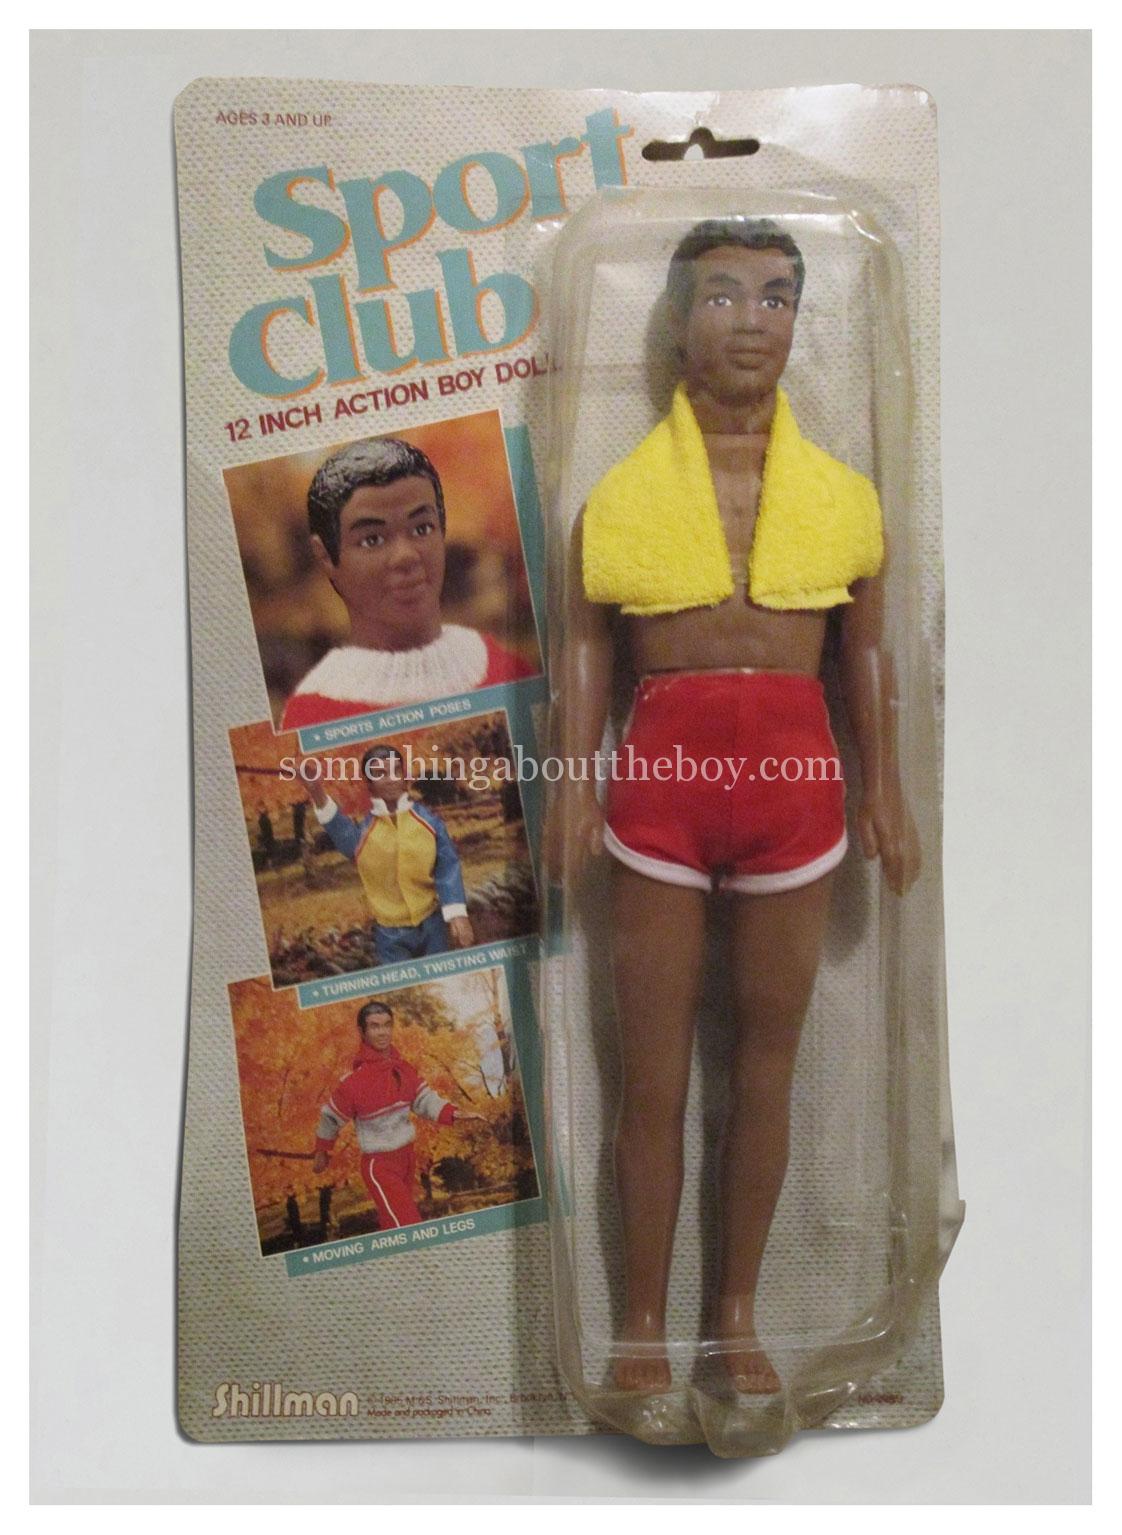 1984 Sport Club boy doll by Shillman